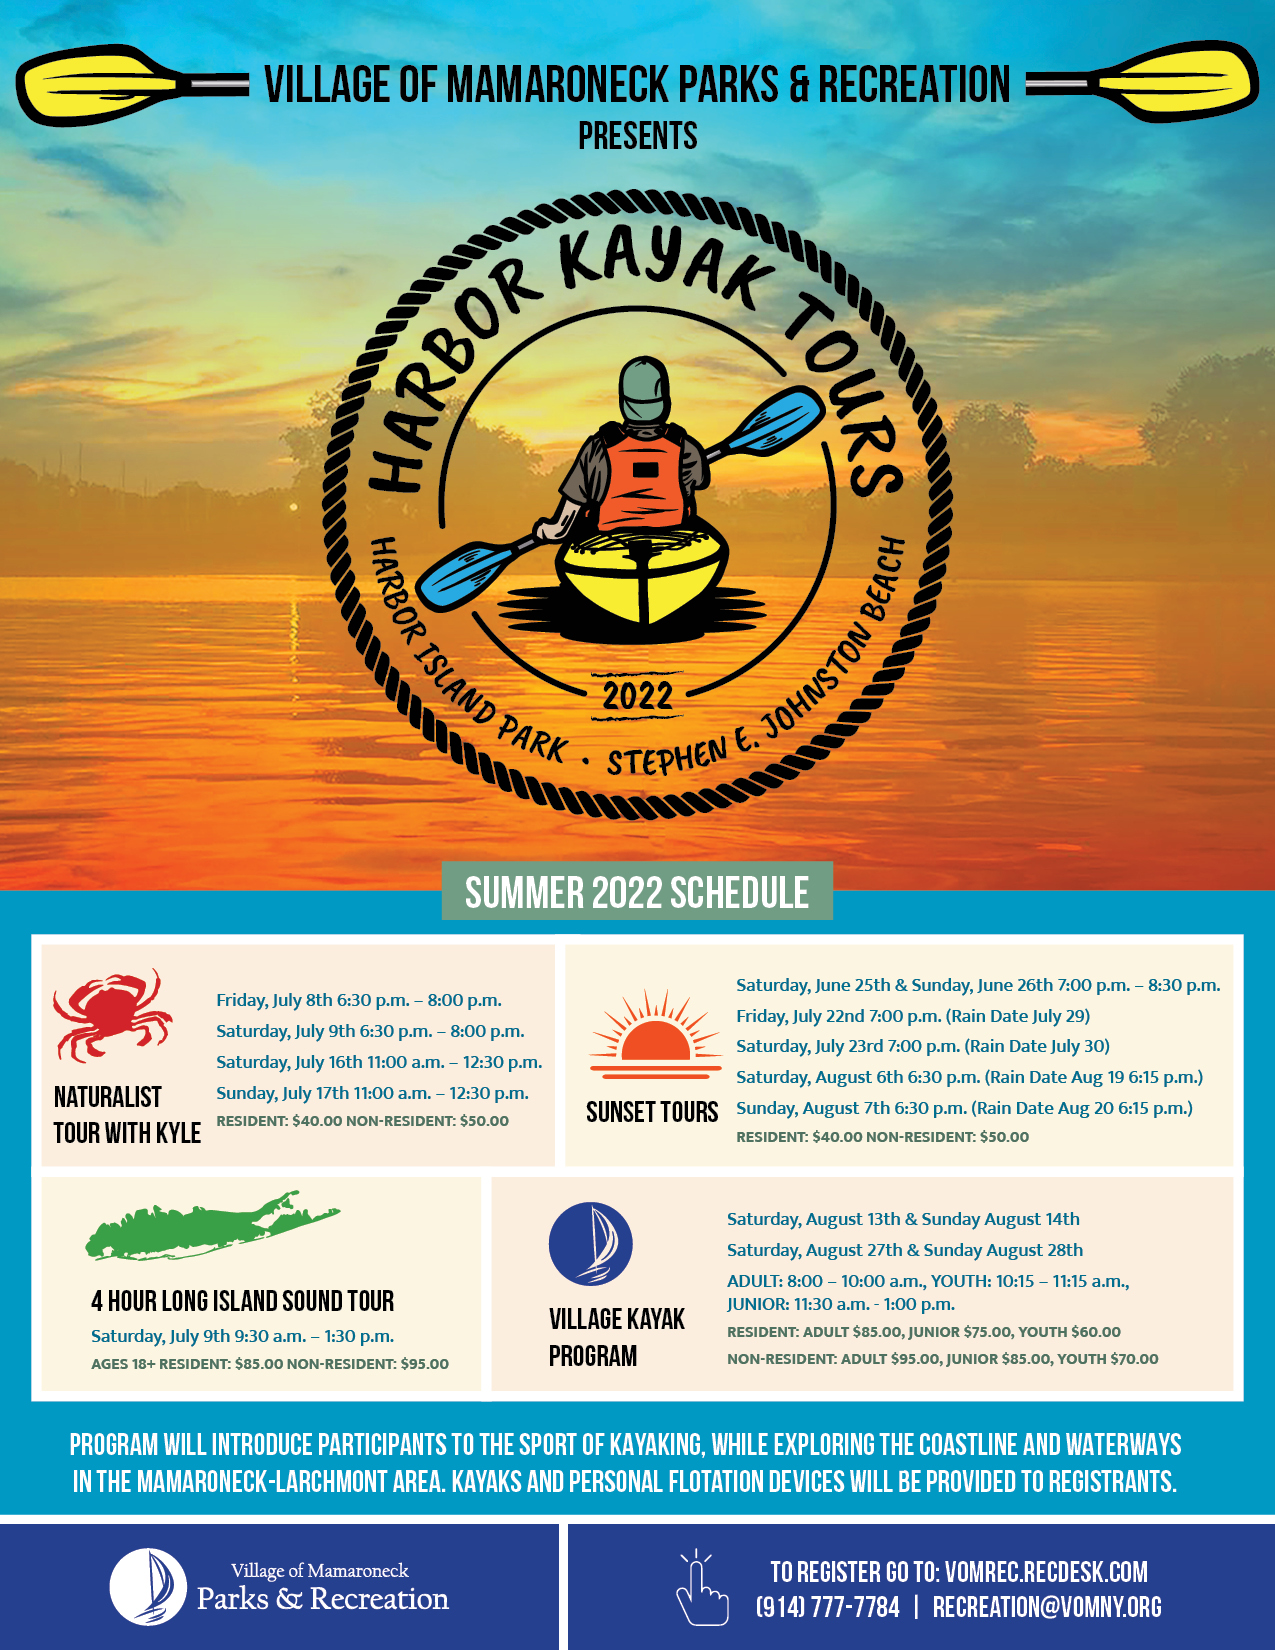 Kayak Tours